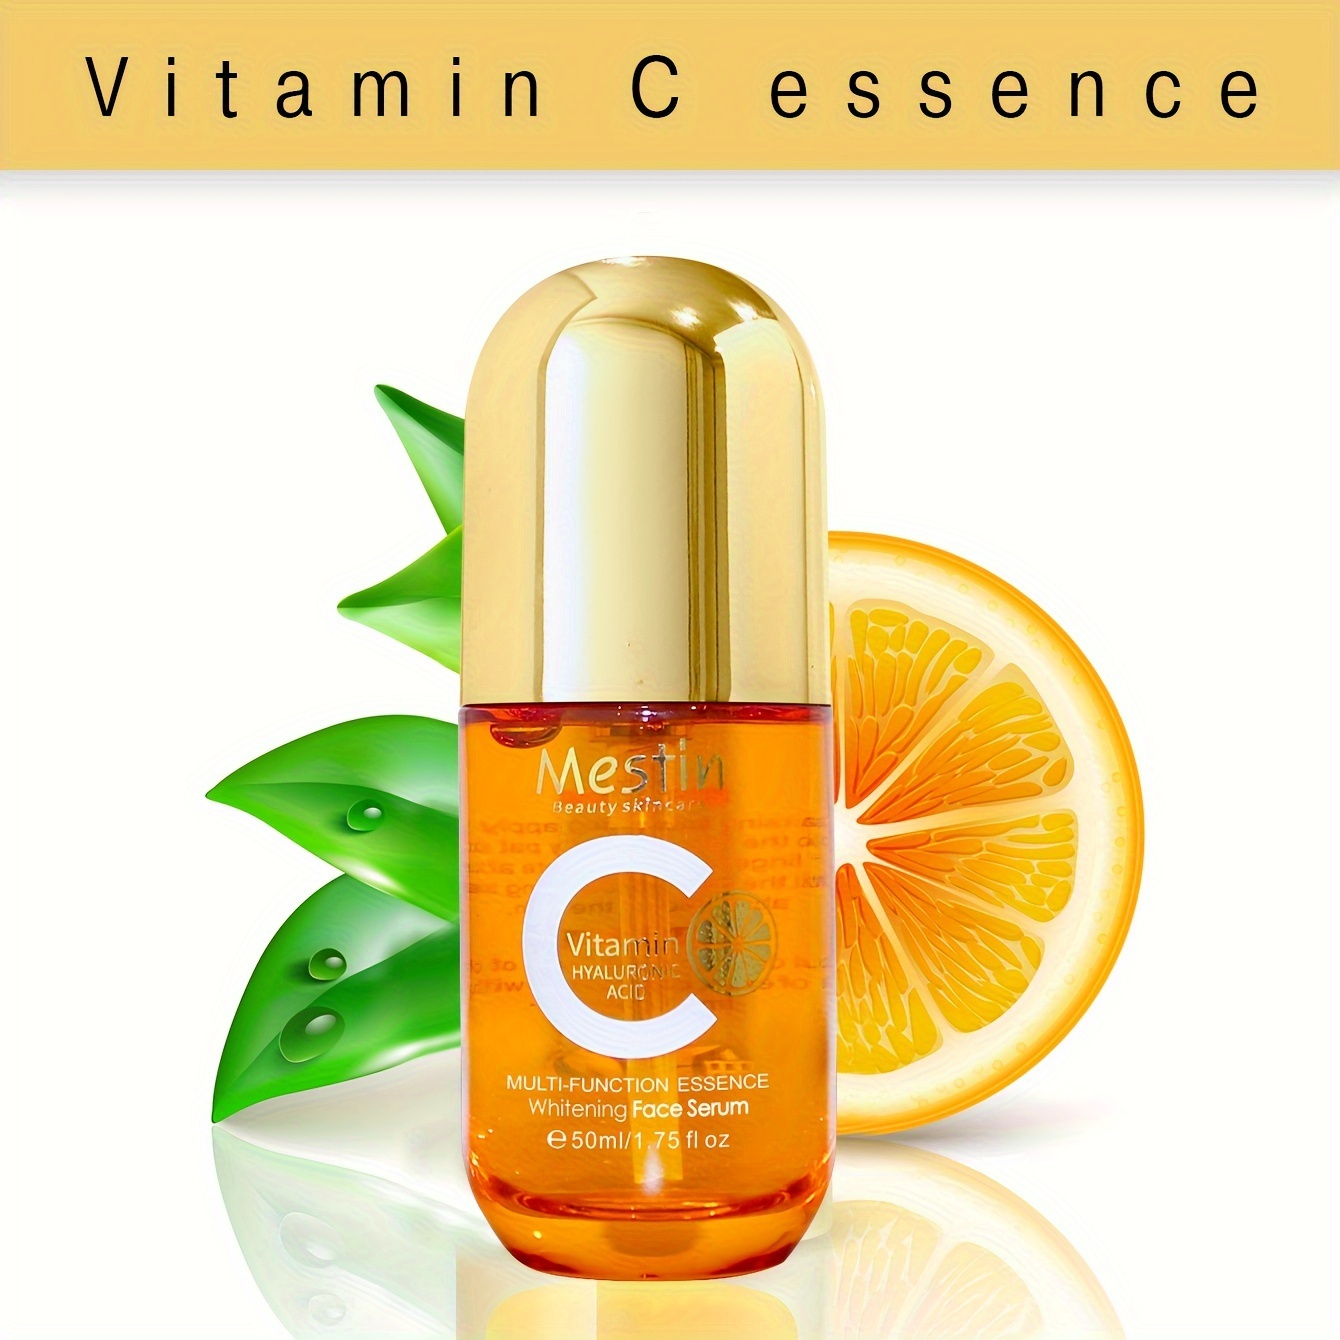 Brightening & Rejuvenating Face Serum with Vitamin C 10% - Avon